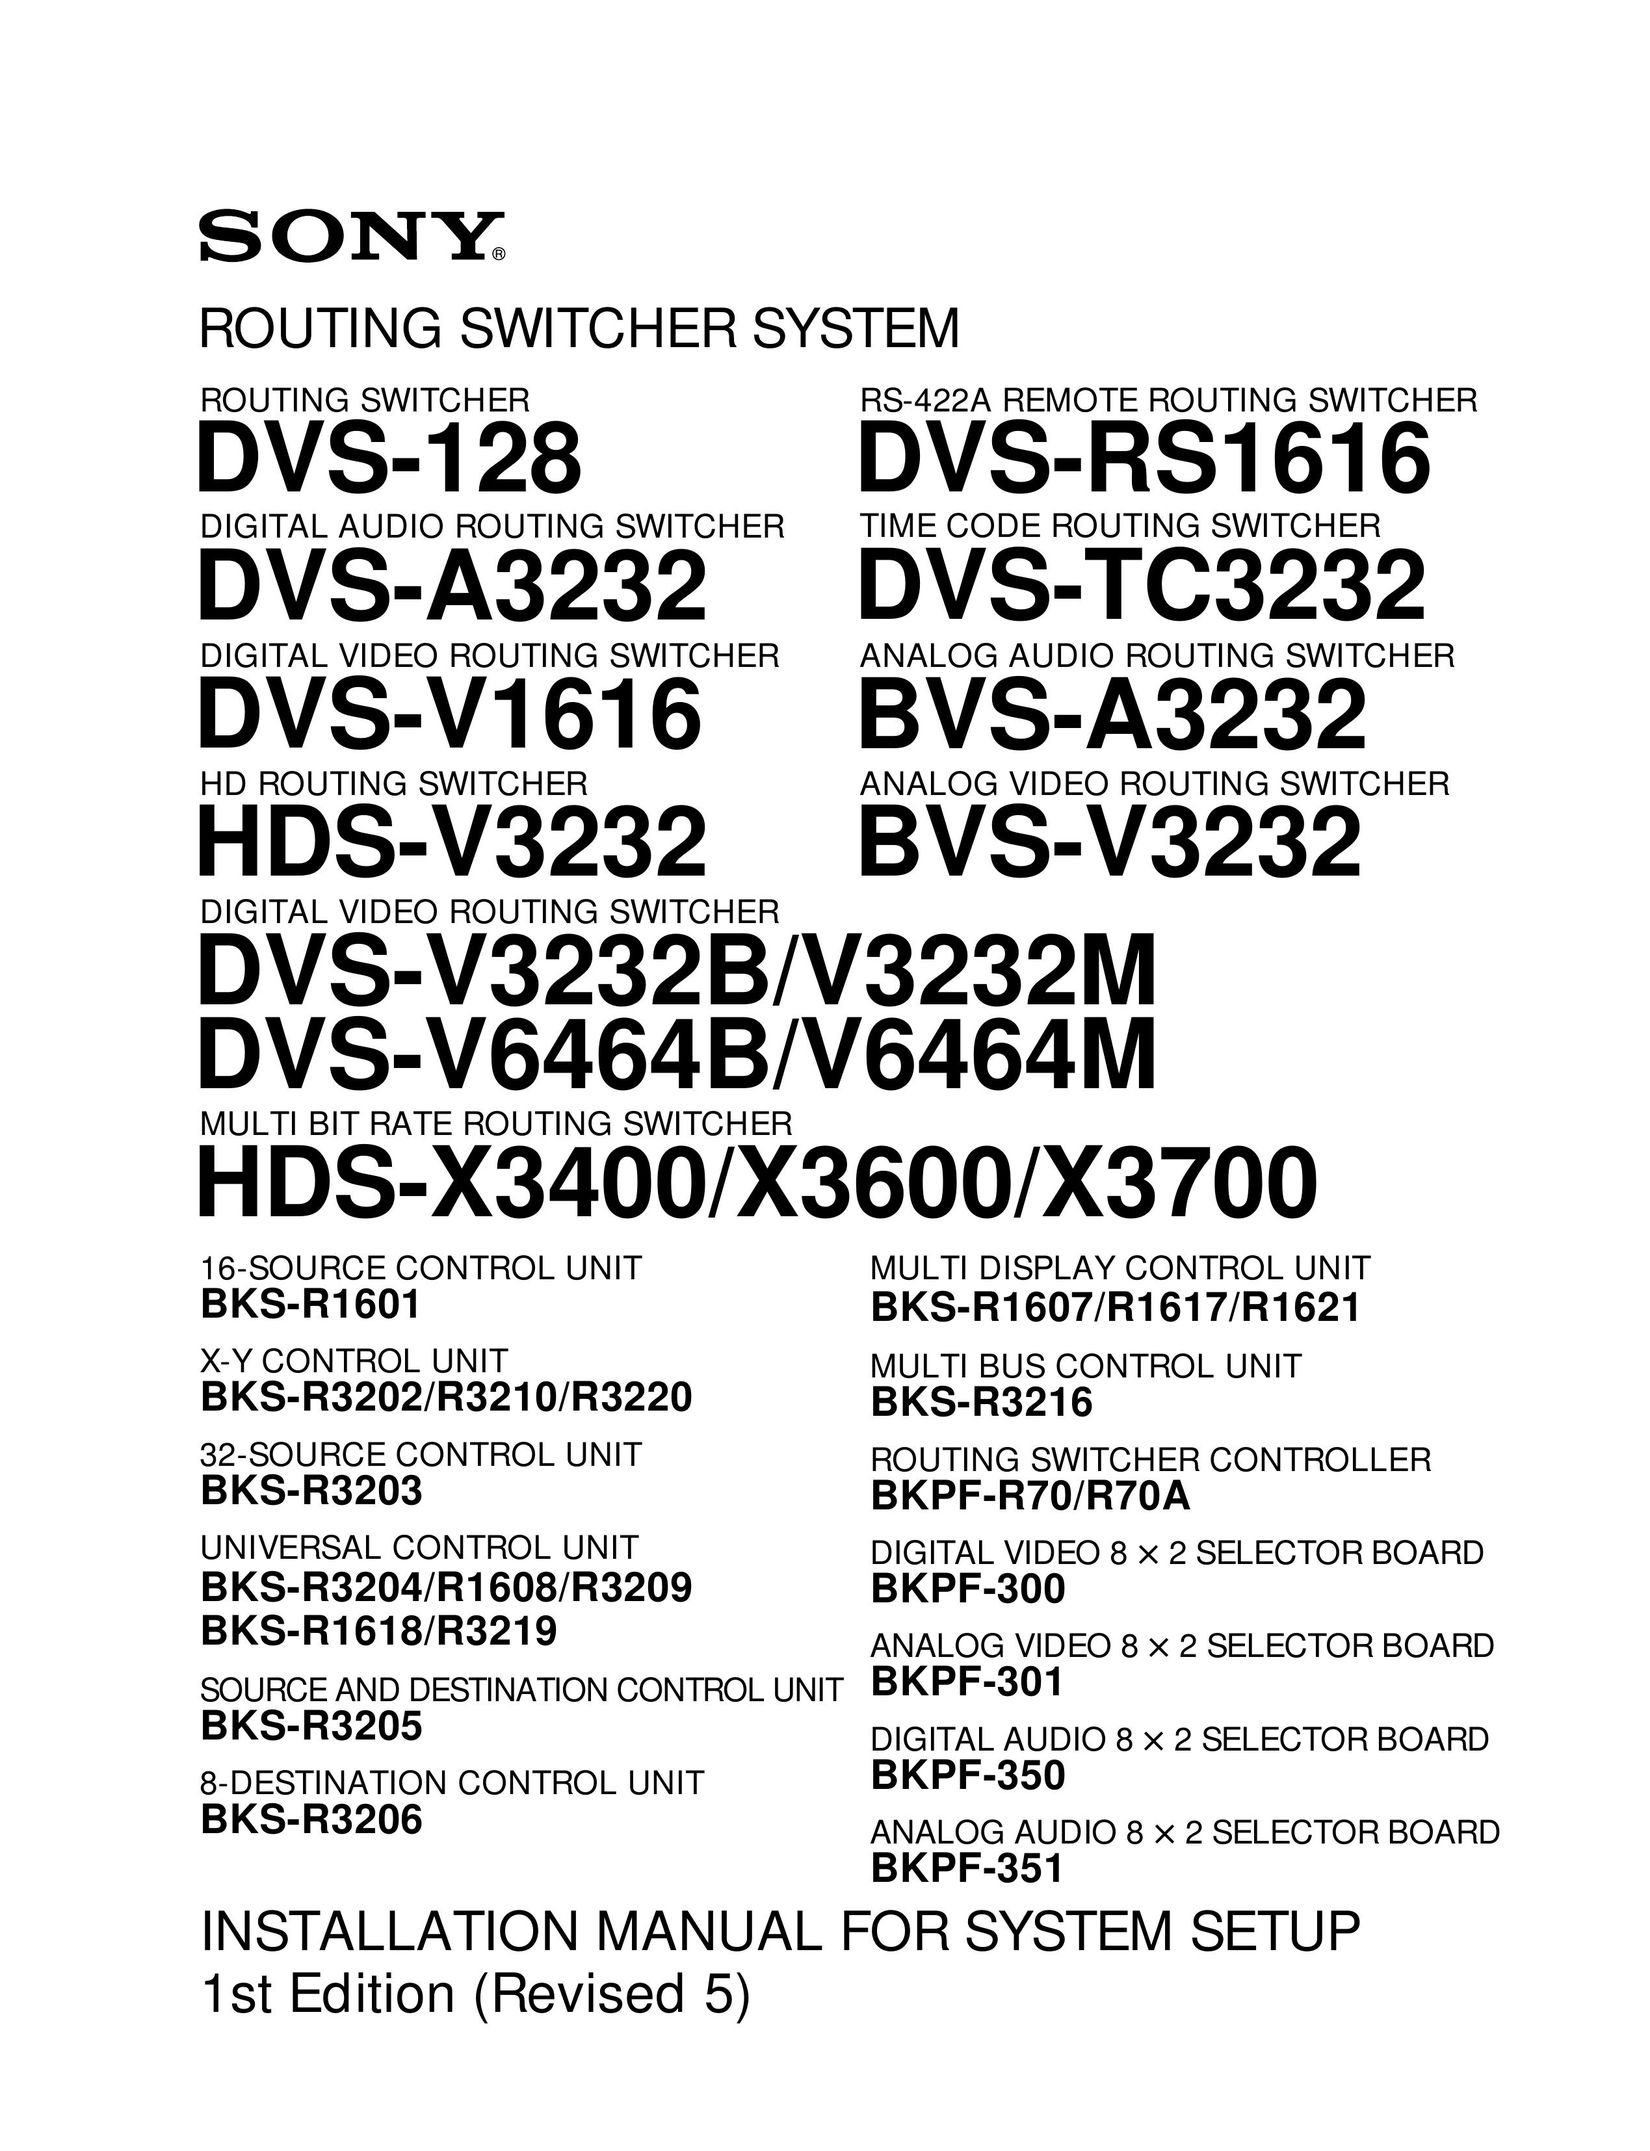 Sony DVS-V3232B/V3232M Network Router User Manual